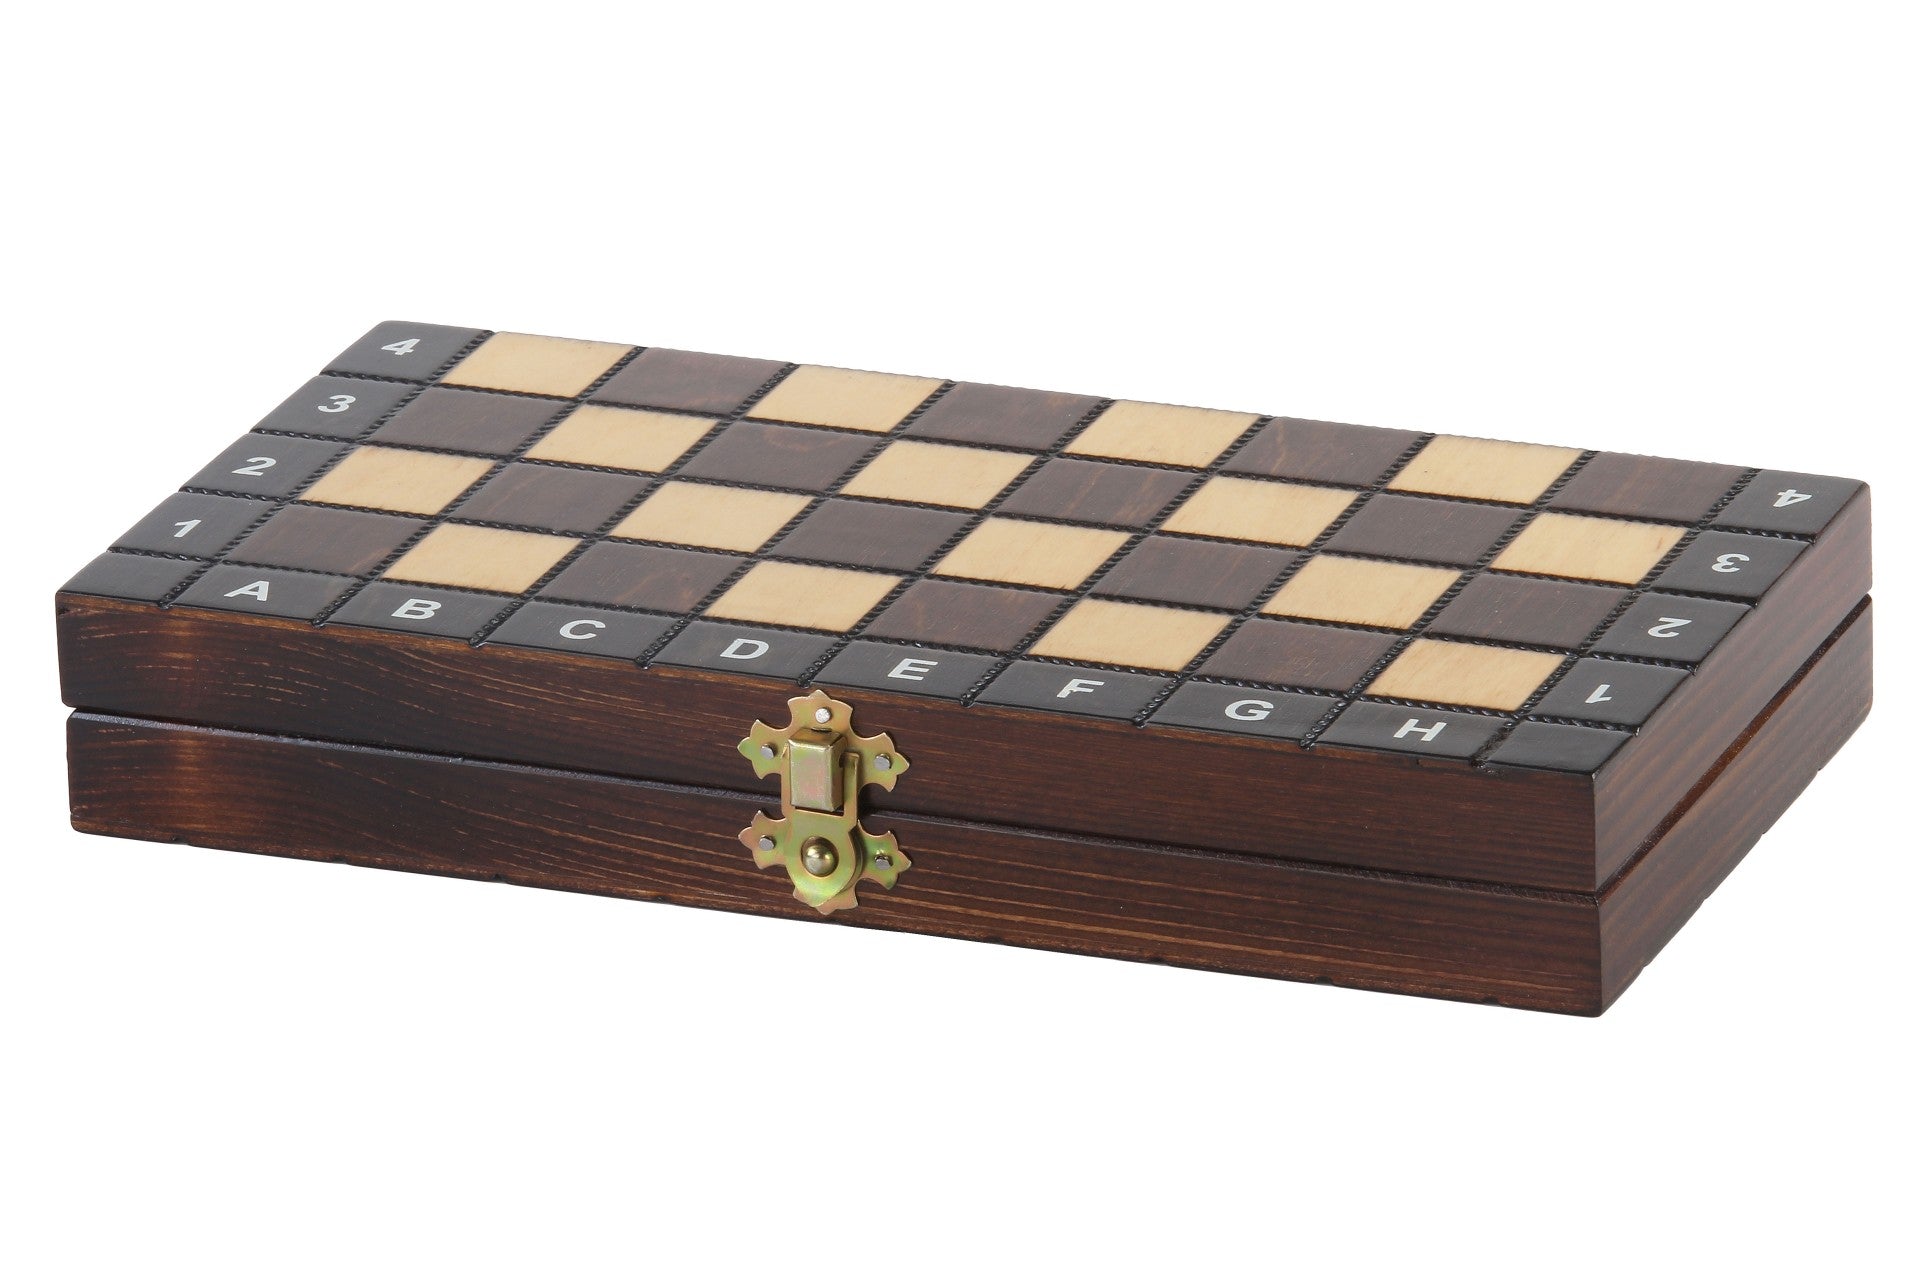 échiquier pliant de voyage - Jeu d'Échecs en bois , Jeu de Dames en bois et Backgammon en Bois - jeu de plateau 3 en 1